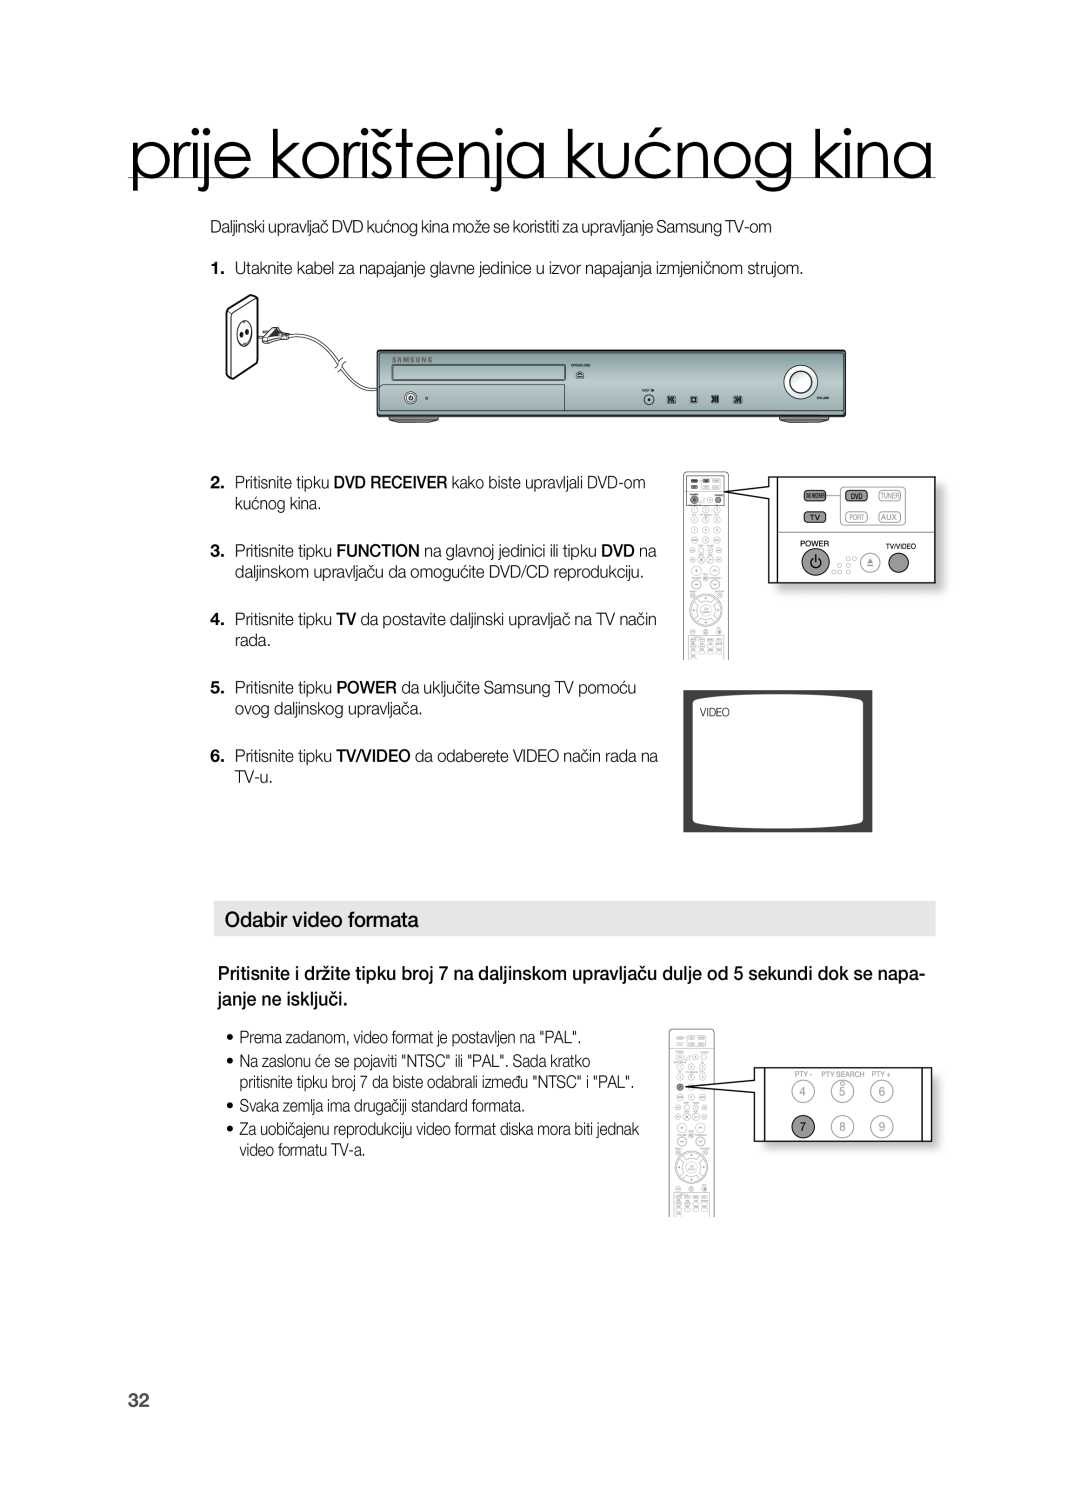 Samsung HT-TZ315R/EDC, HT-TZ212R/EDC, HT-Z310R/EDC, HT-Z210R/EDC manual prije korištenja kućnog kina, odabir video formata 